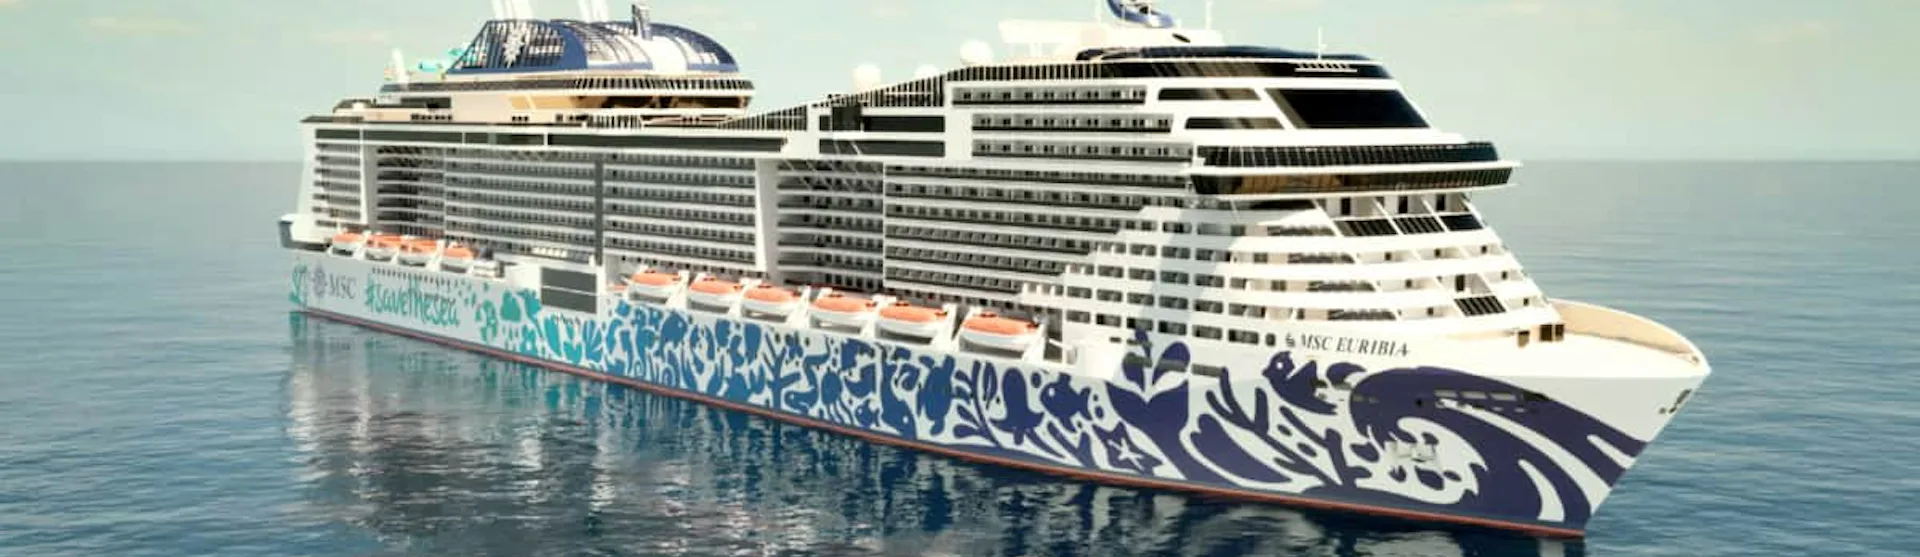 MSC Cruises - MSC Euribia